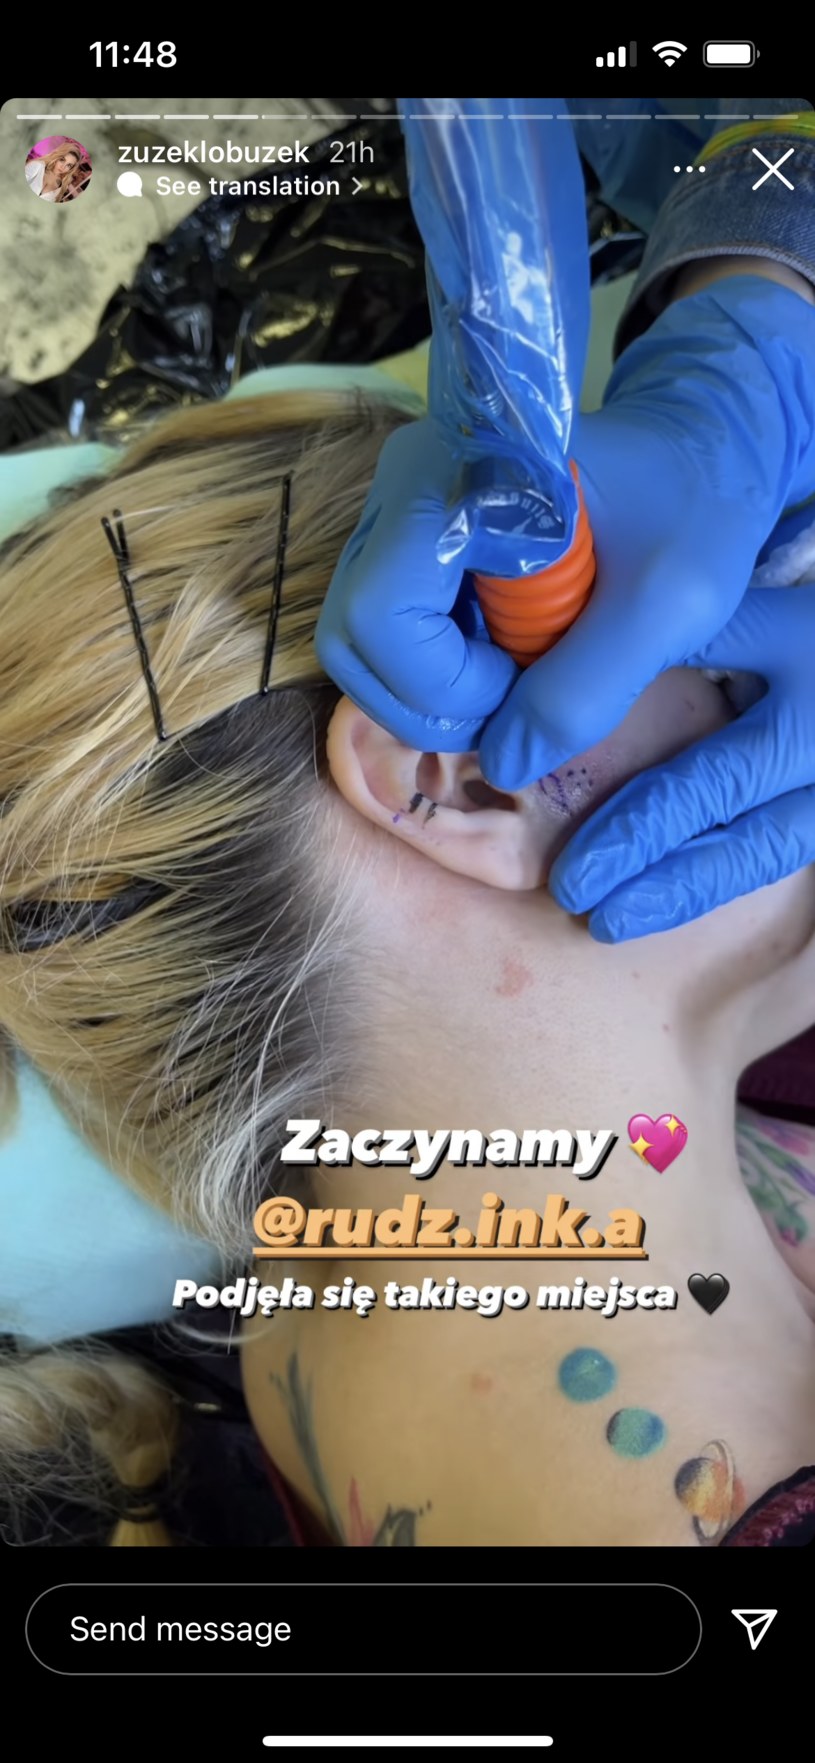 Zuzanna Borucka wytatuowała sobie twarz i uszy! / @zuzeklobuzek /Instagram /Instagram